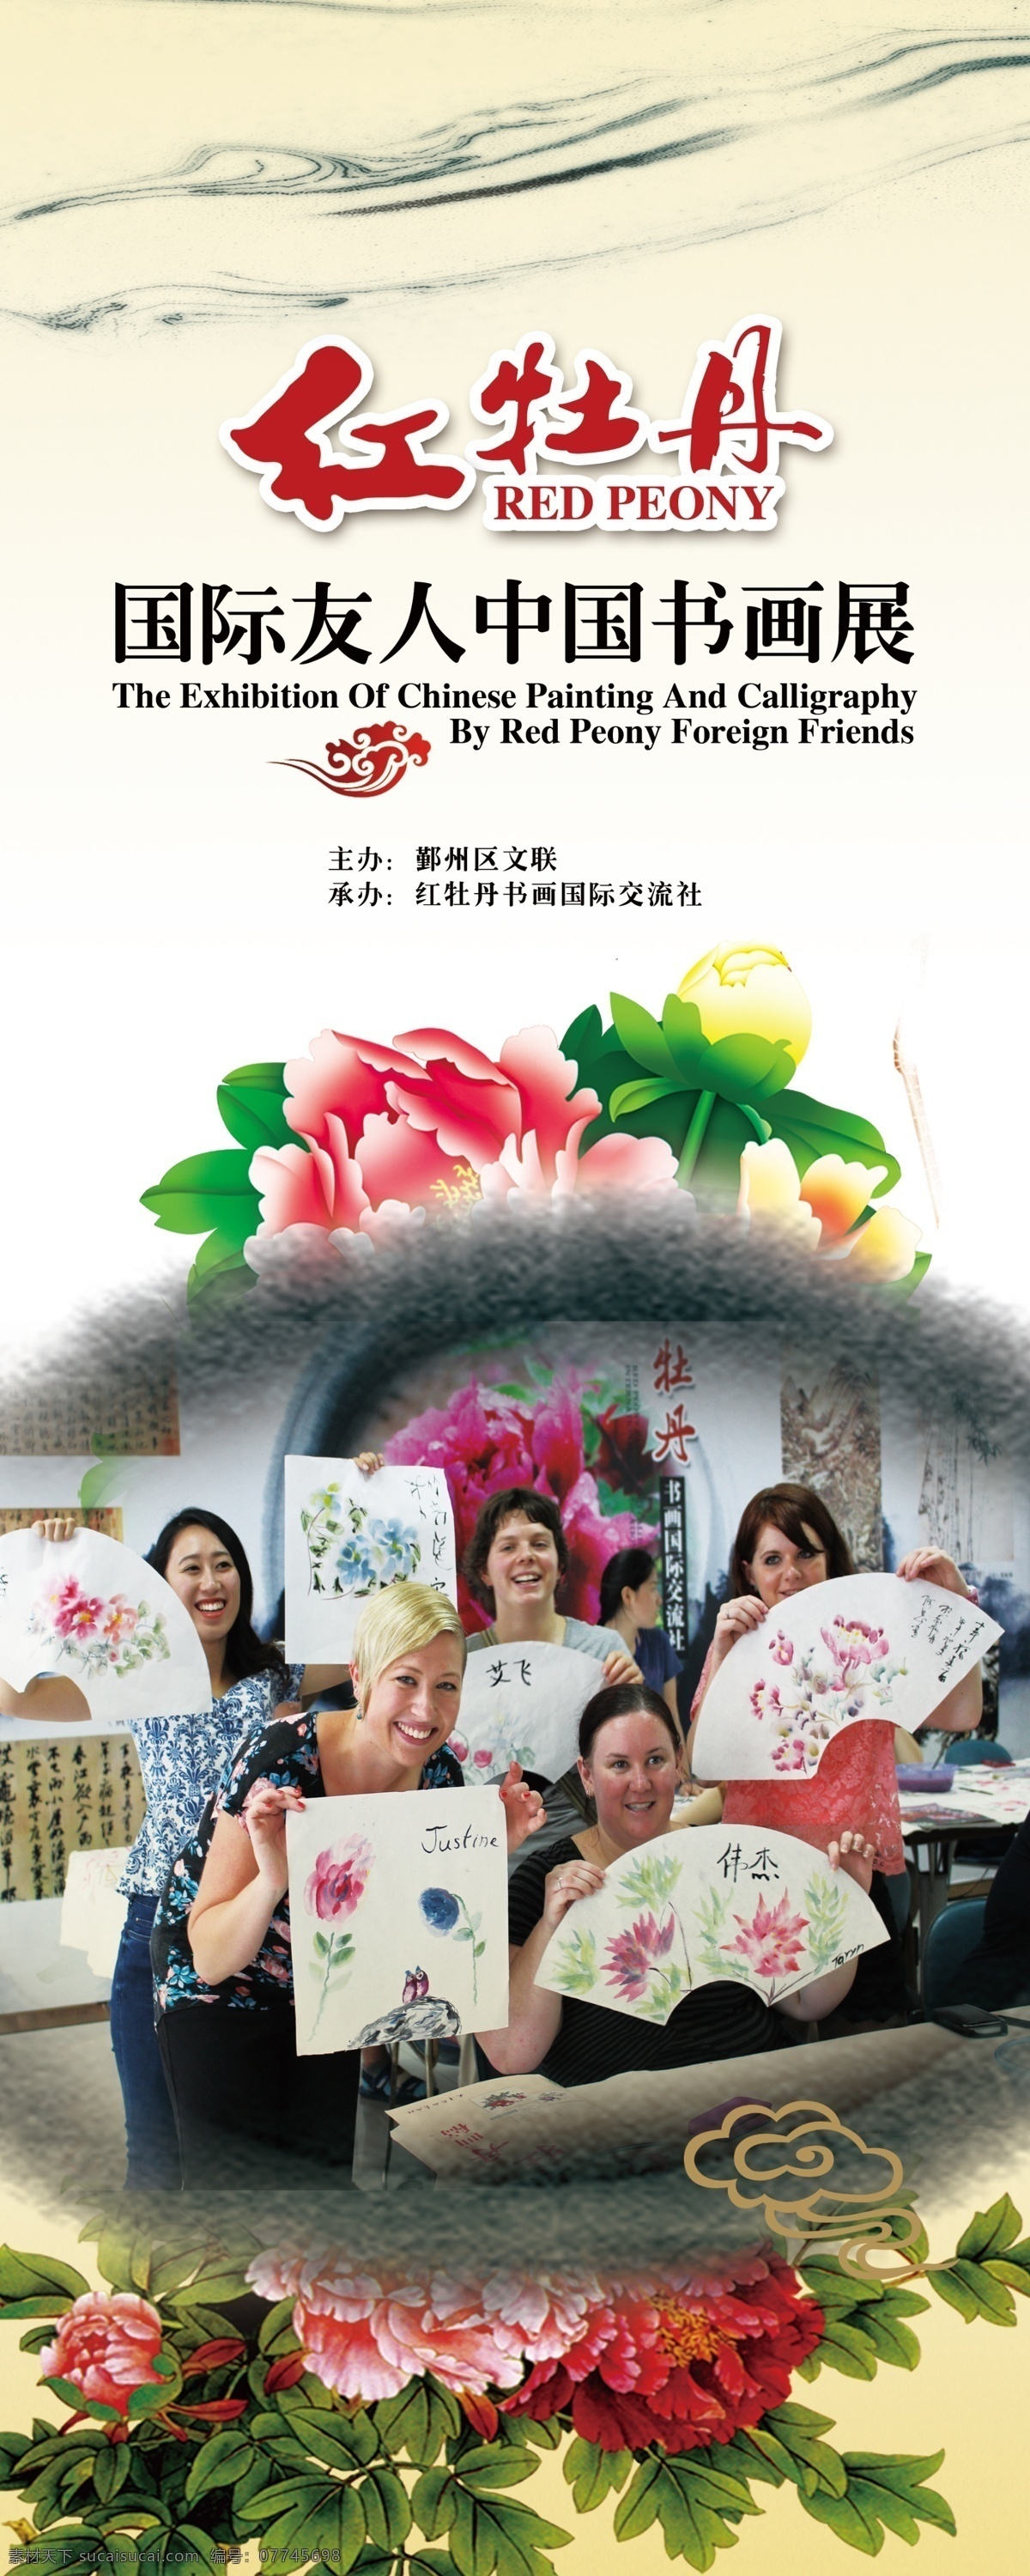 国际 友人 书画展 古典 牡丹花 中国风 原创设计 原创展板